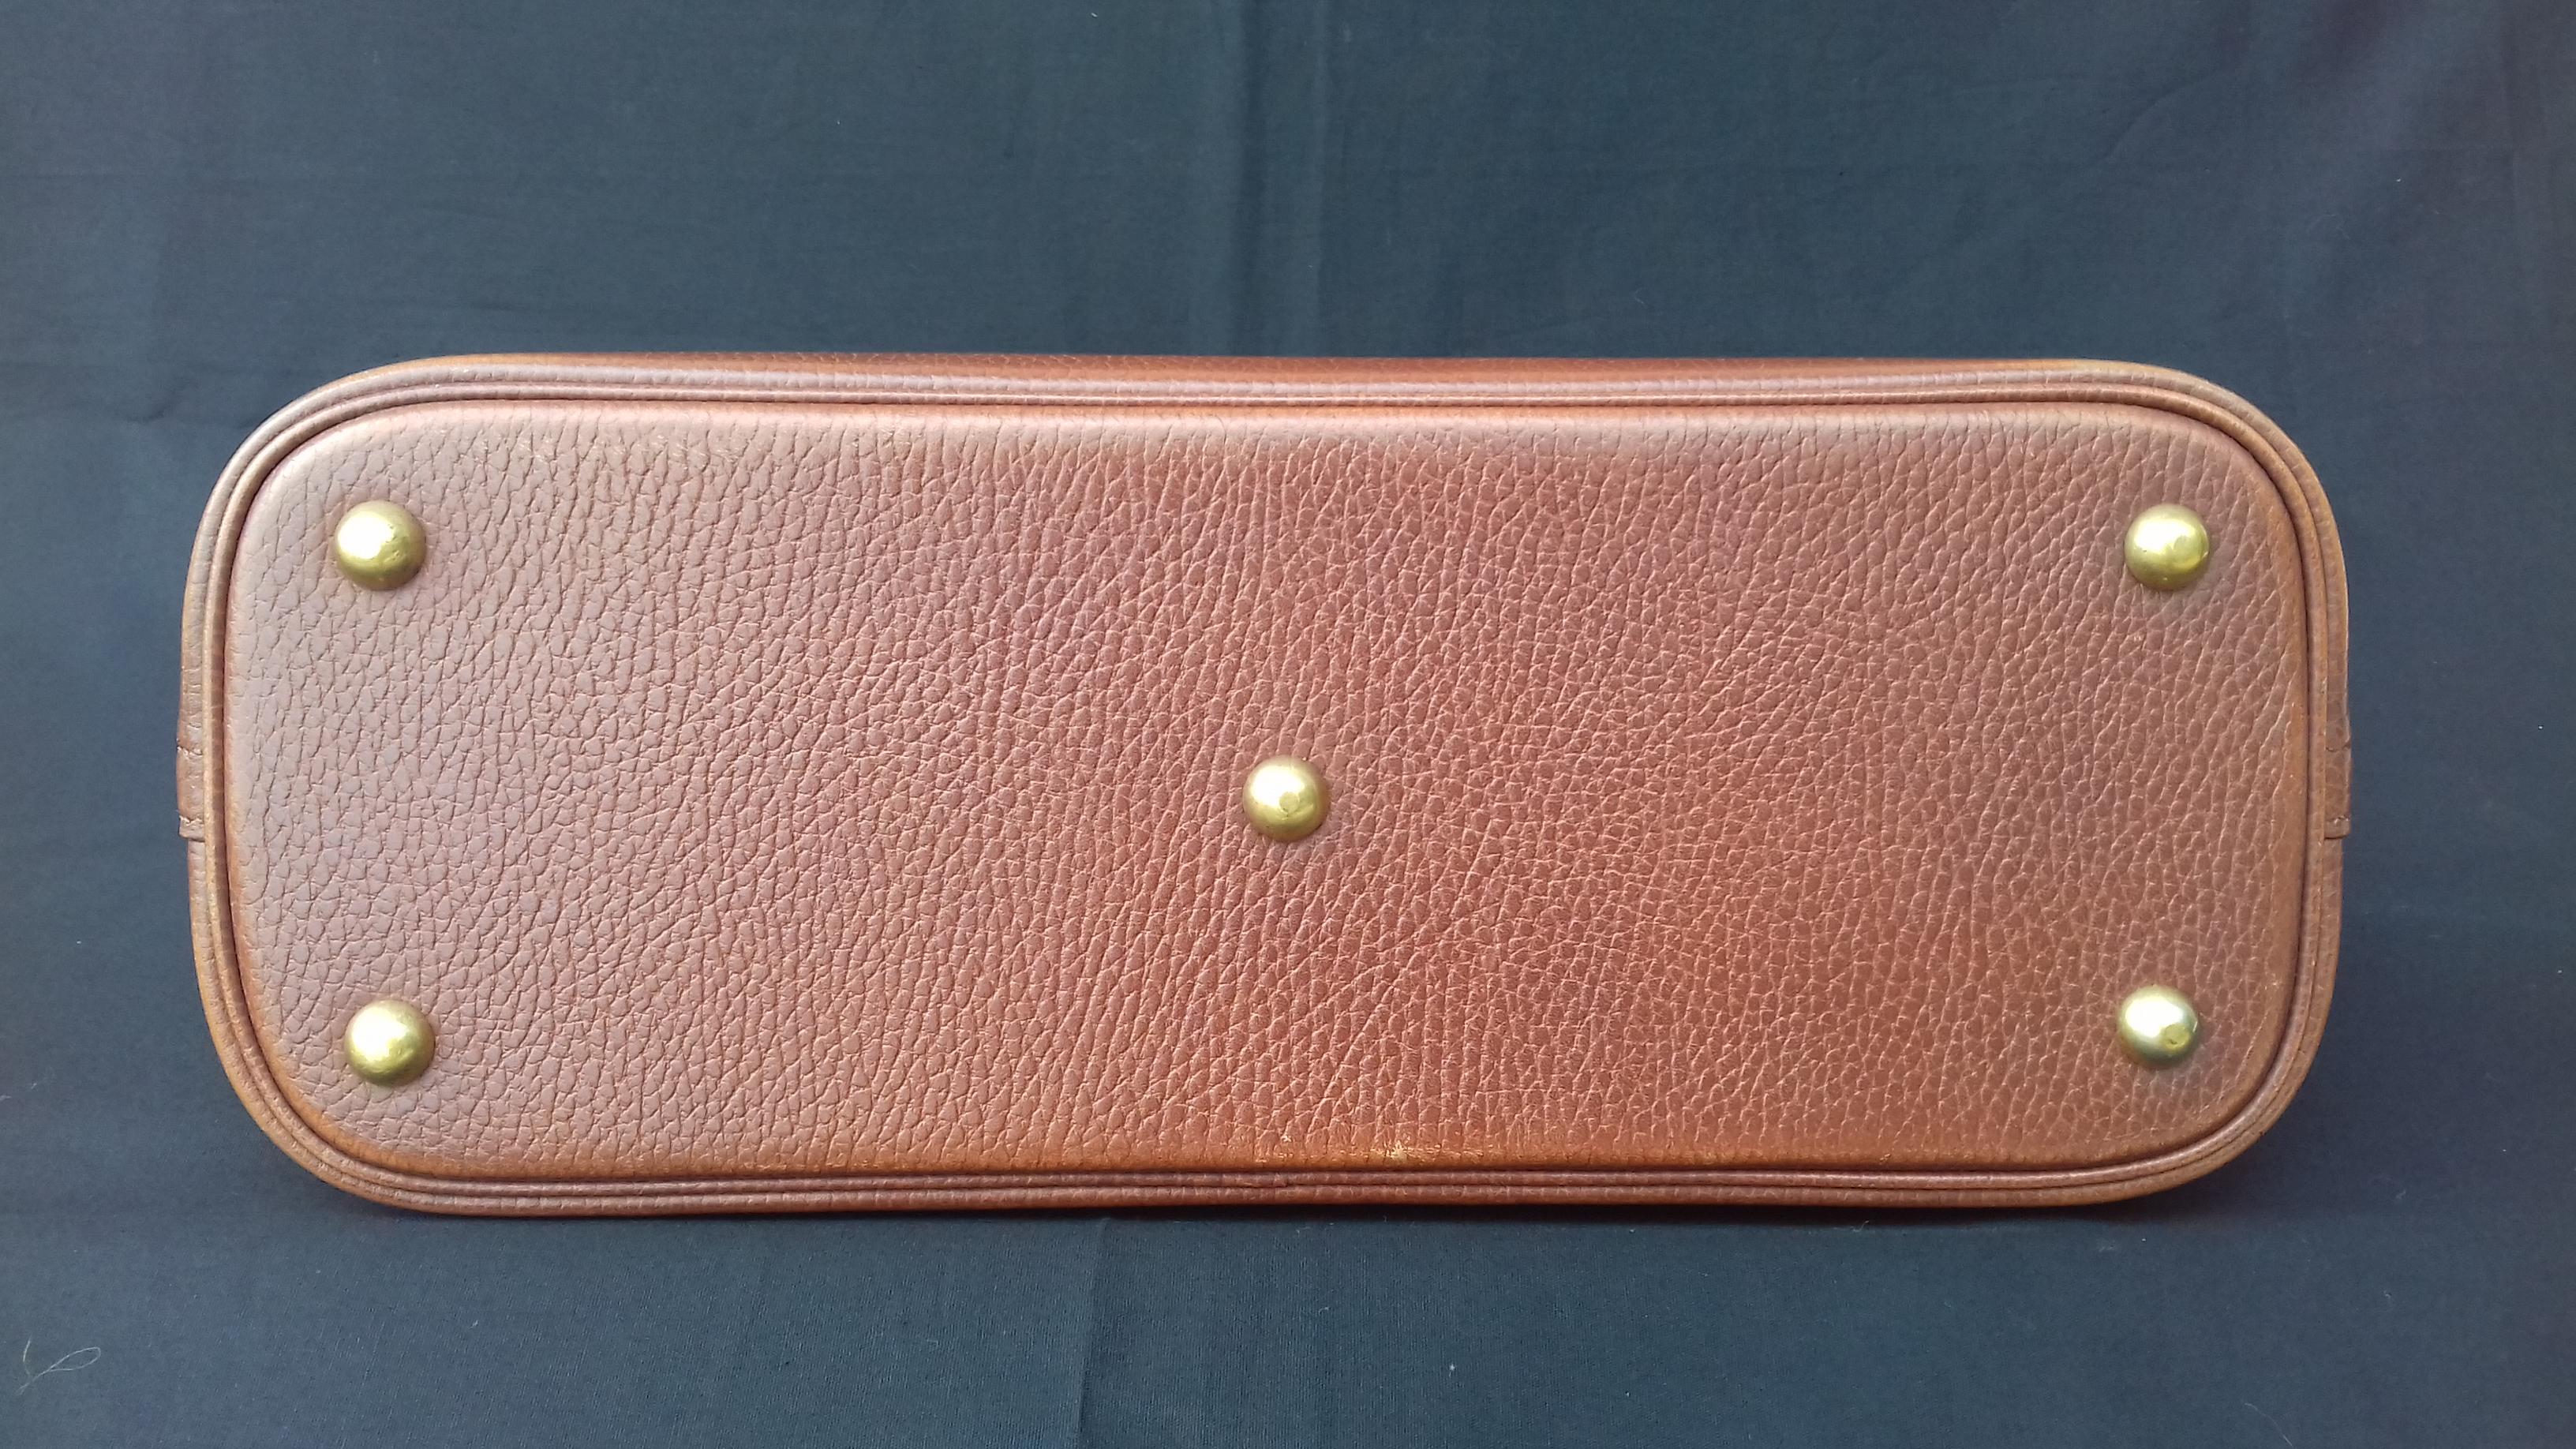 Hermès Vintage Bolide Tasche 2 Wege Braun Leder Golden Hdw 33 cm 1